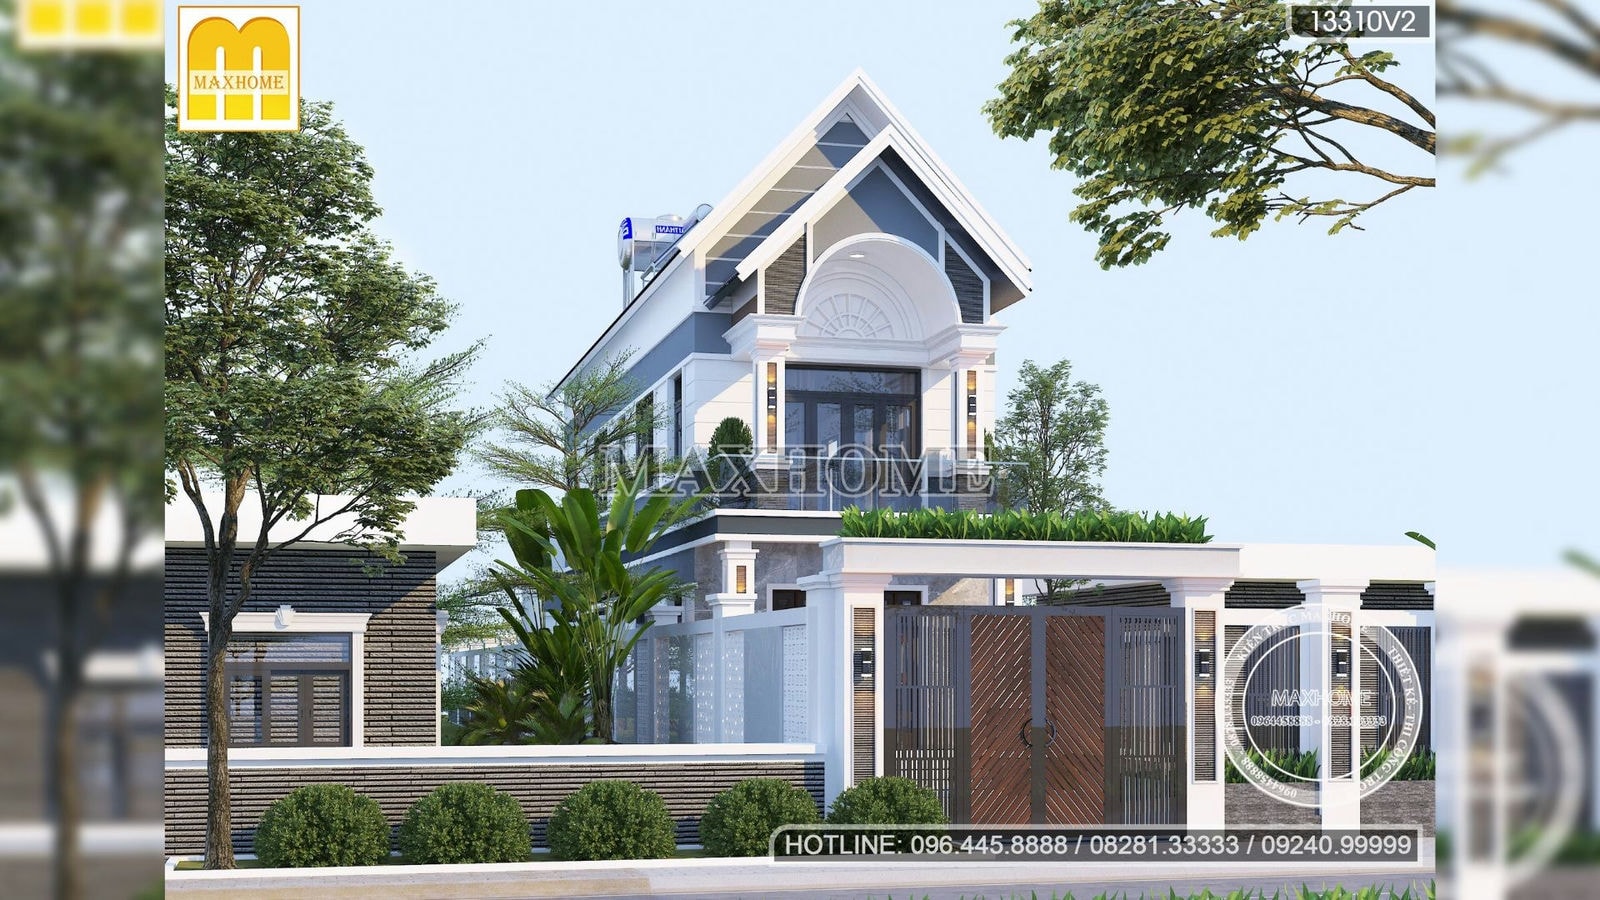 Mẫu nhà 2 tầng mái Thái vạn người mê tại Đồng Tháp | MH00481